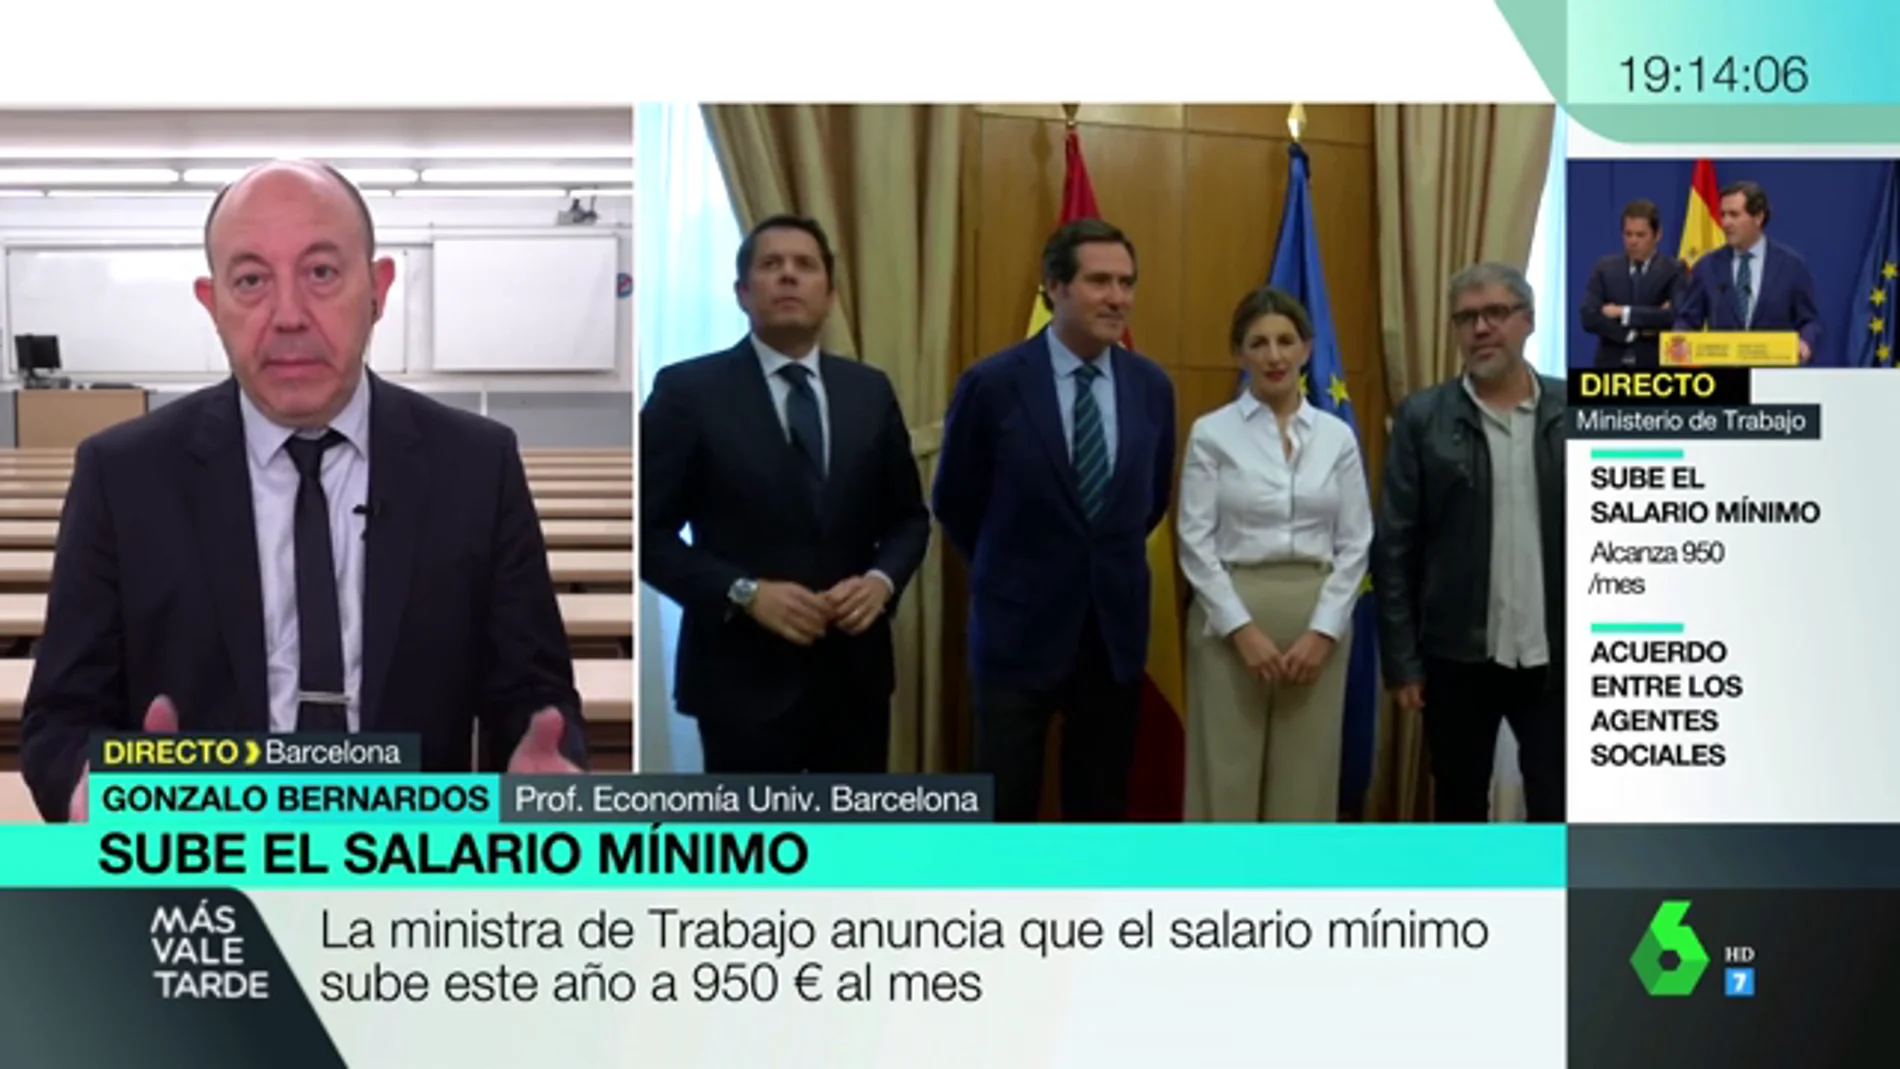 Gonzalo Bernardos, la subida del salario mínimo: "Nos lo merecemos después de tantos años de penurias"